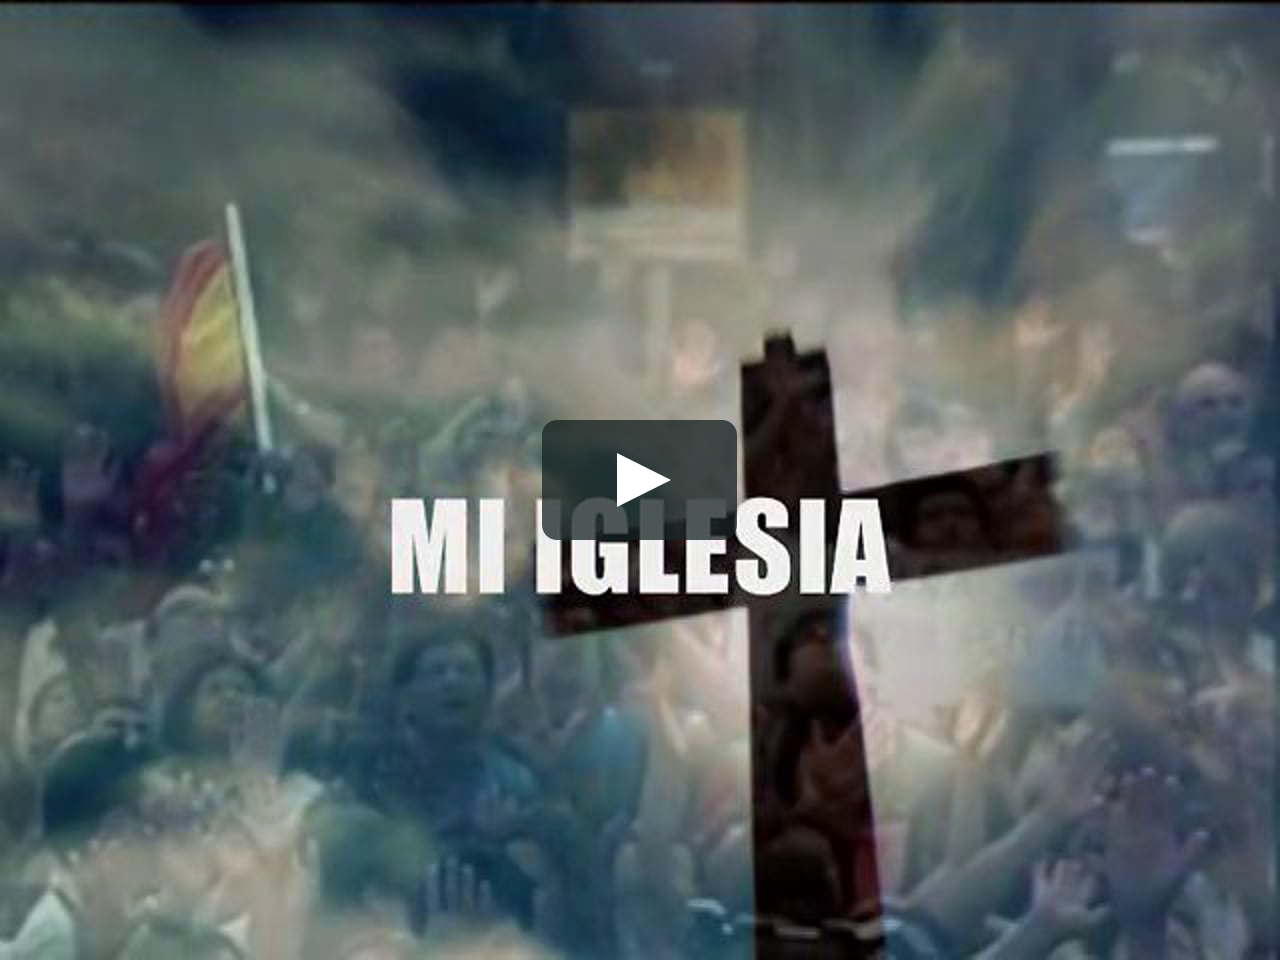 MI IGLESIA - REFLEXION on Vimeo